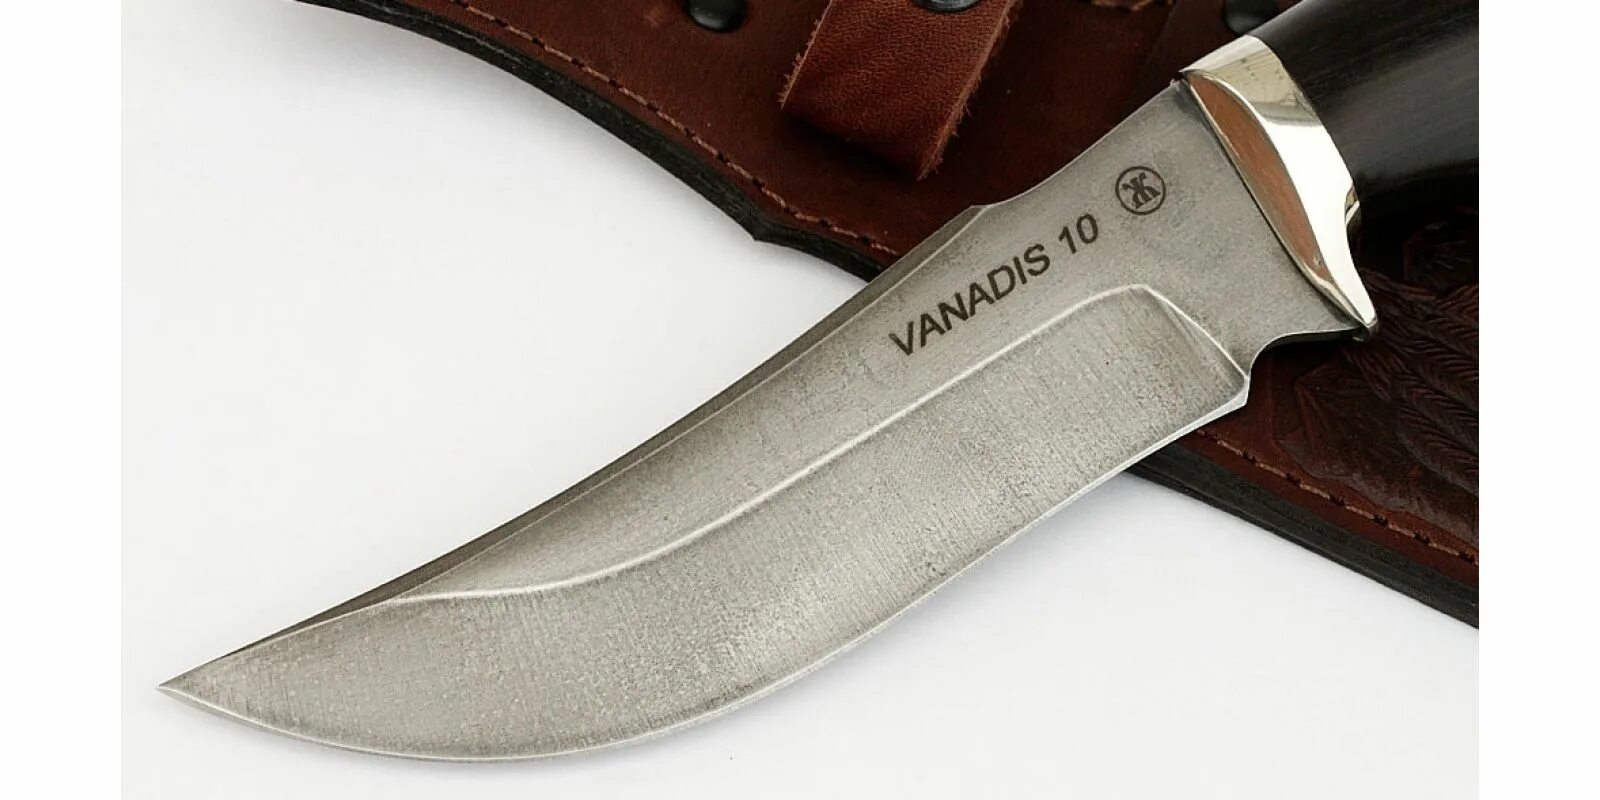 Сталь Vanadis 10. Ножи из стали Vanadis 10. Нож Orion, сталь Vanadis 4e. Нож клык (сталь Vanadis 8, рукоять g10.